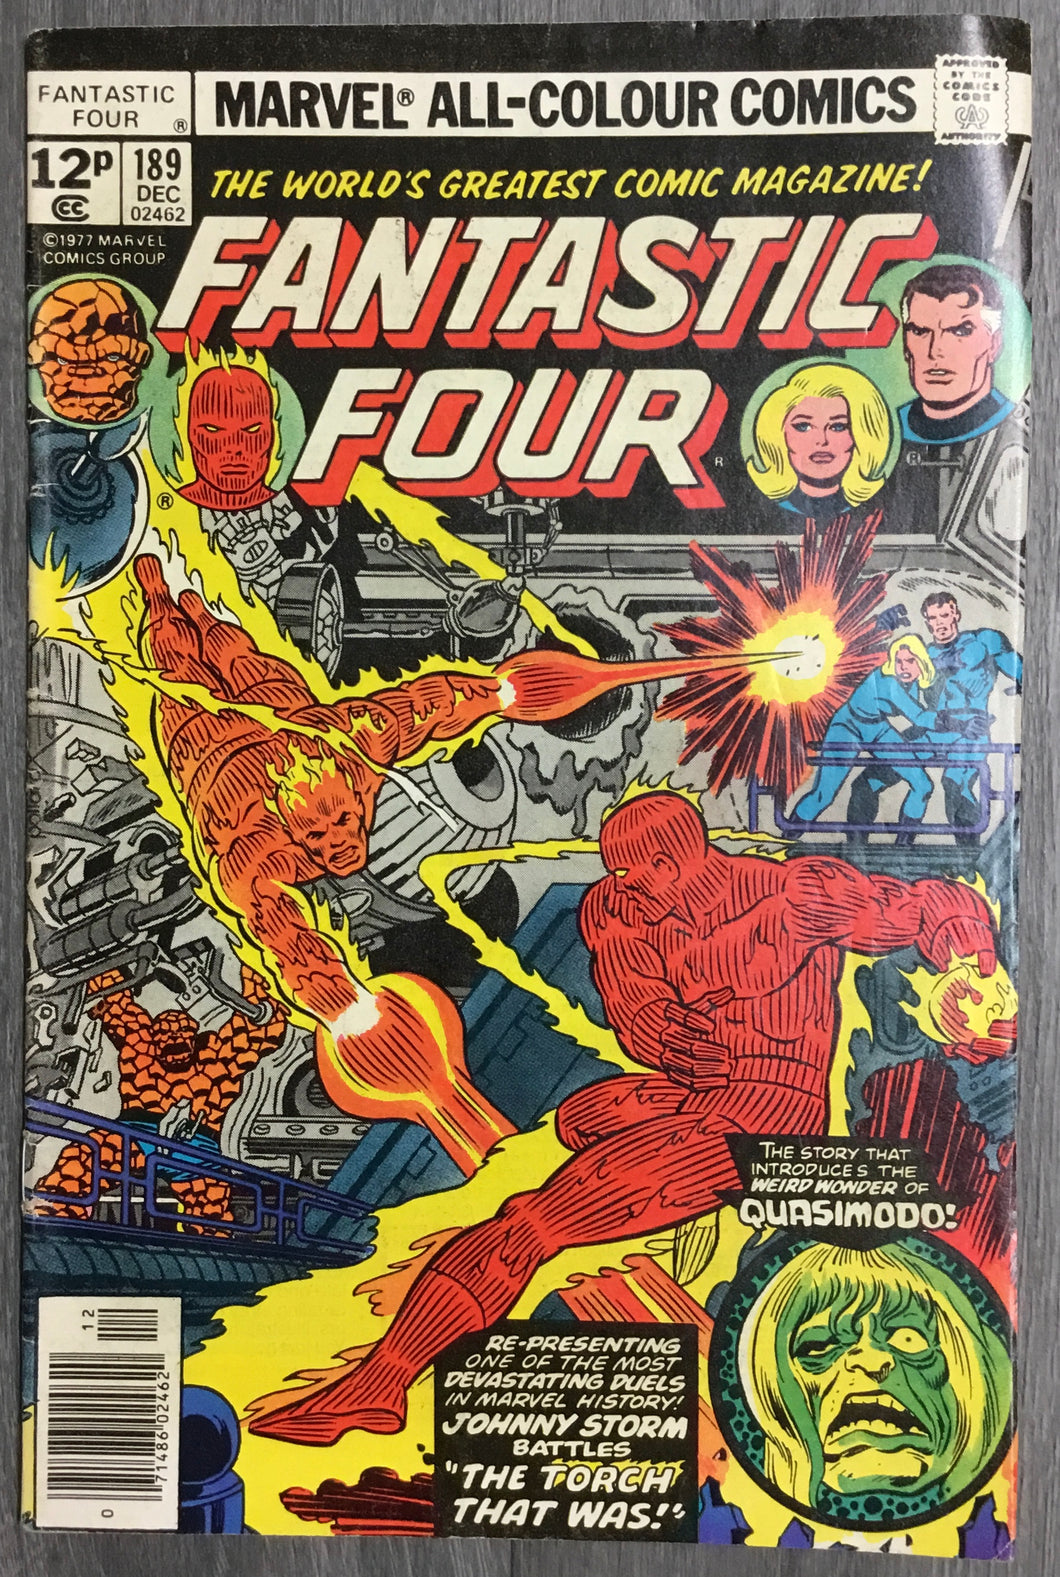 Fantastic Four No. #189 1977 Marvel Comics